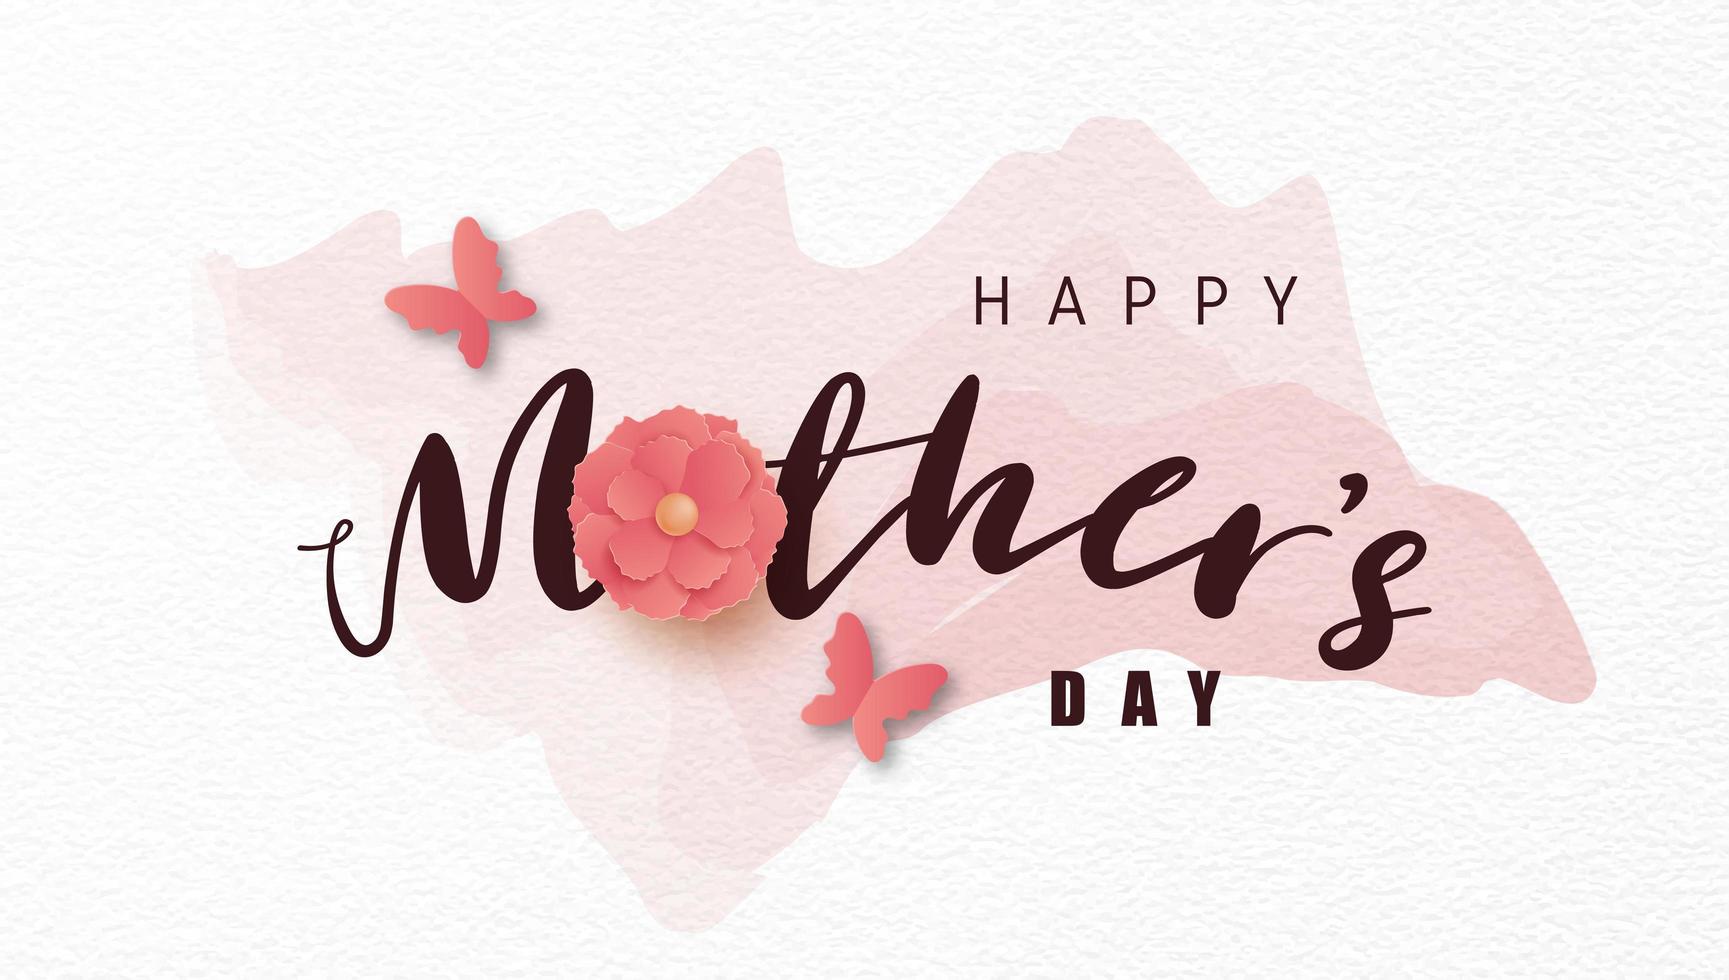 cartaz do dia das mães com flor de papel na lavagem em aquarela vetor